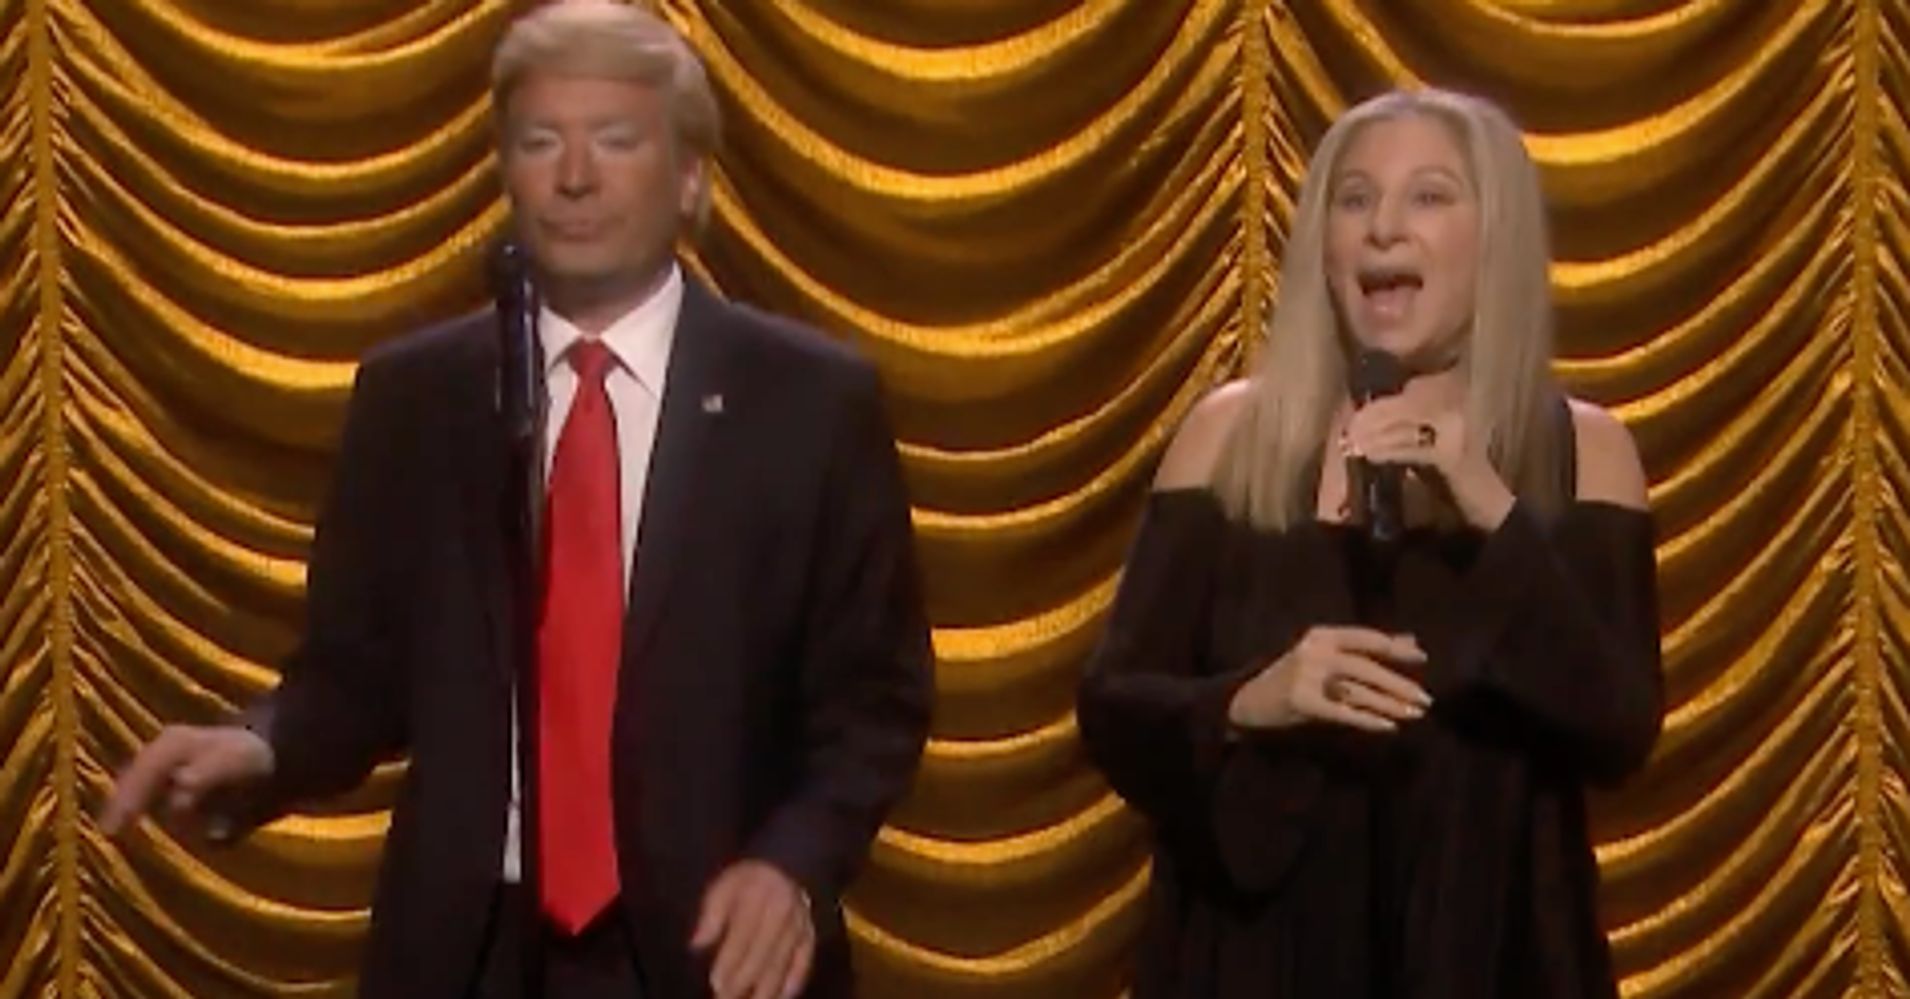 Barbra Streisand Mocks Donald Trump In Yuge Jimmy Fallon Duet Huffpost